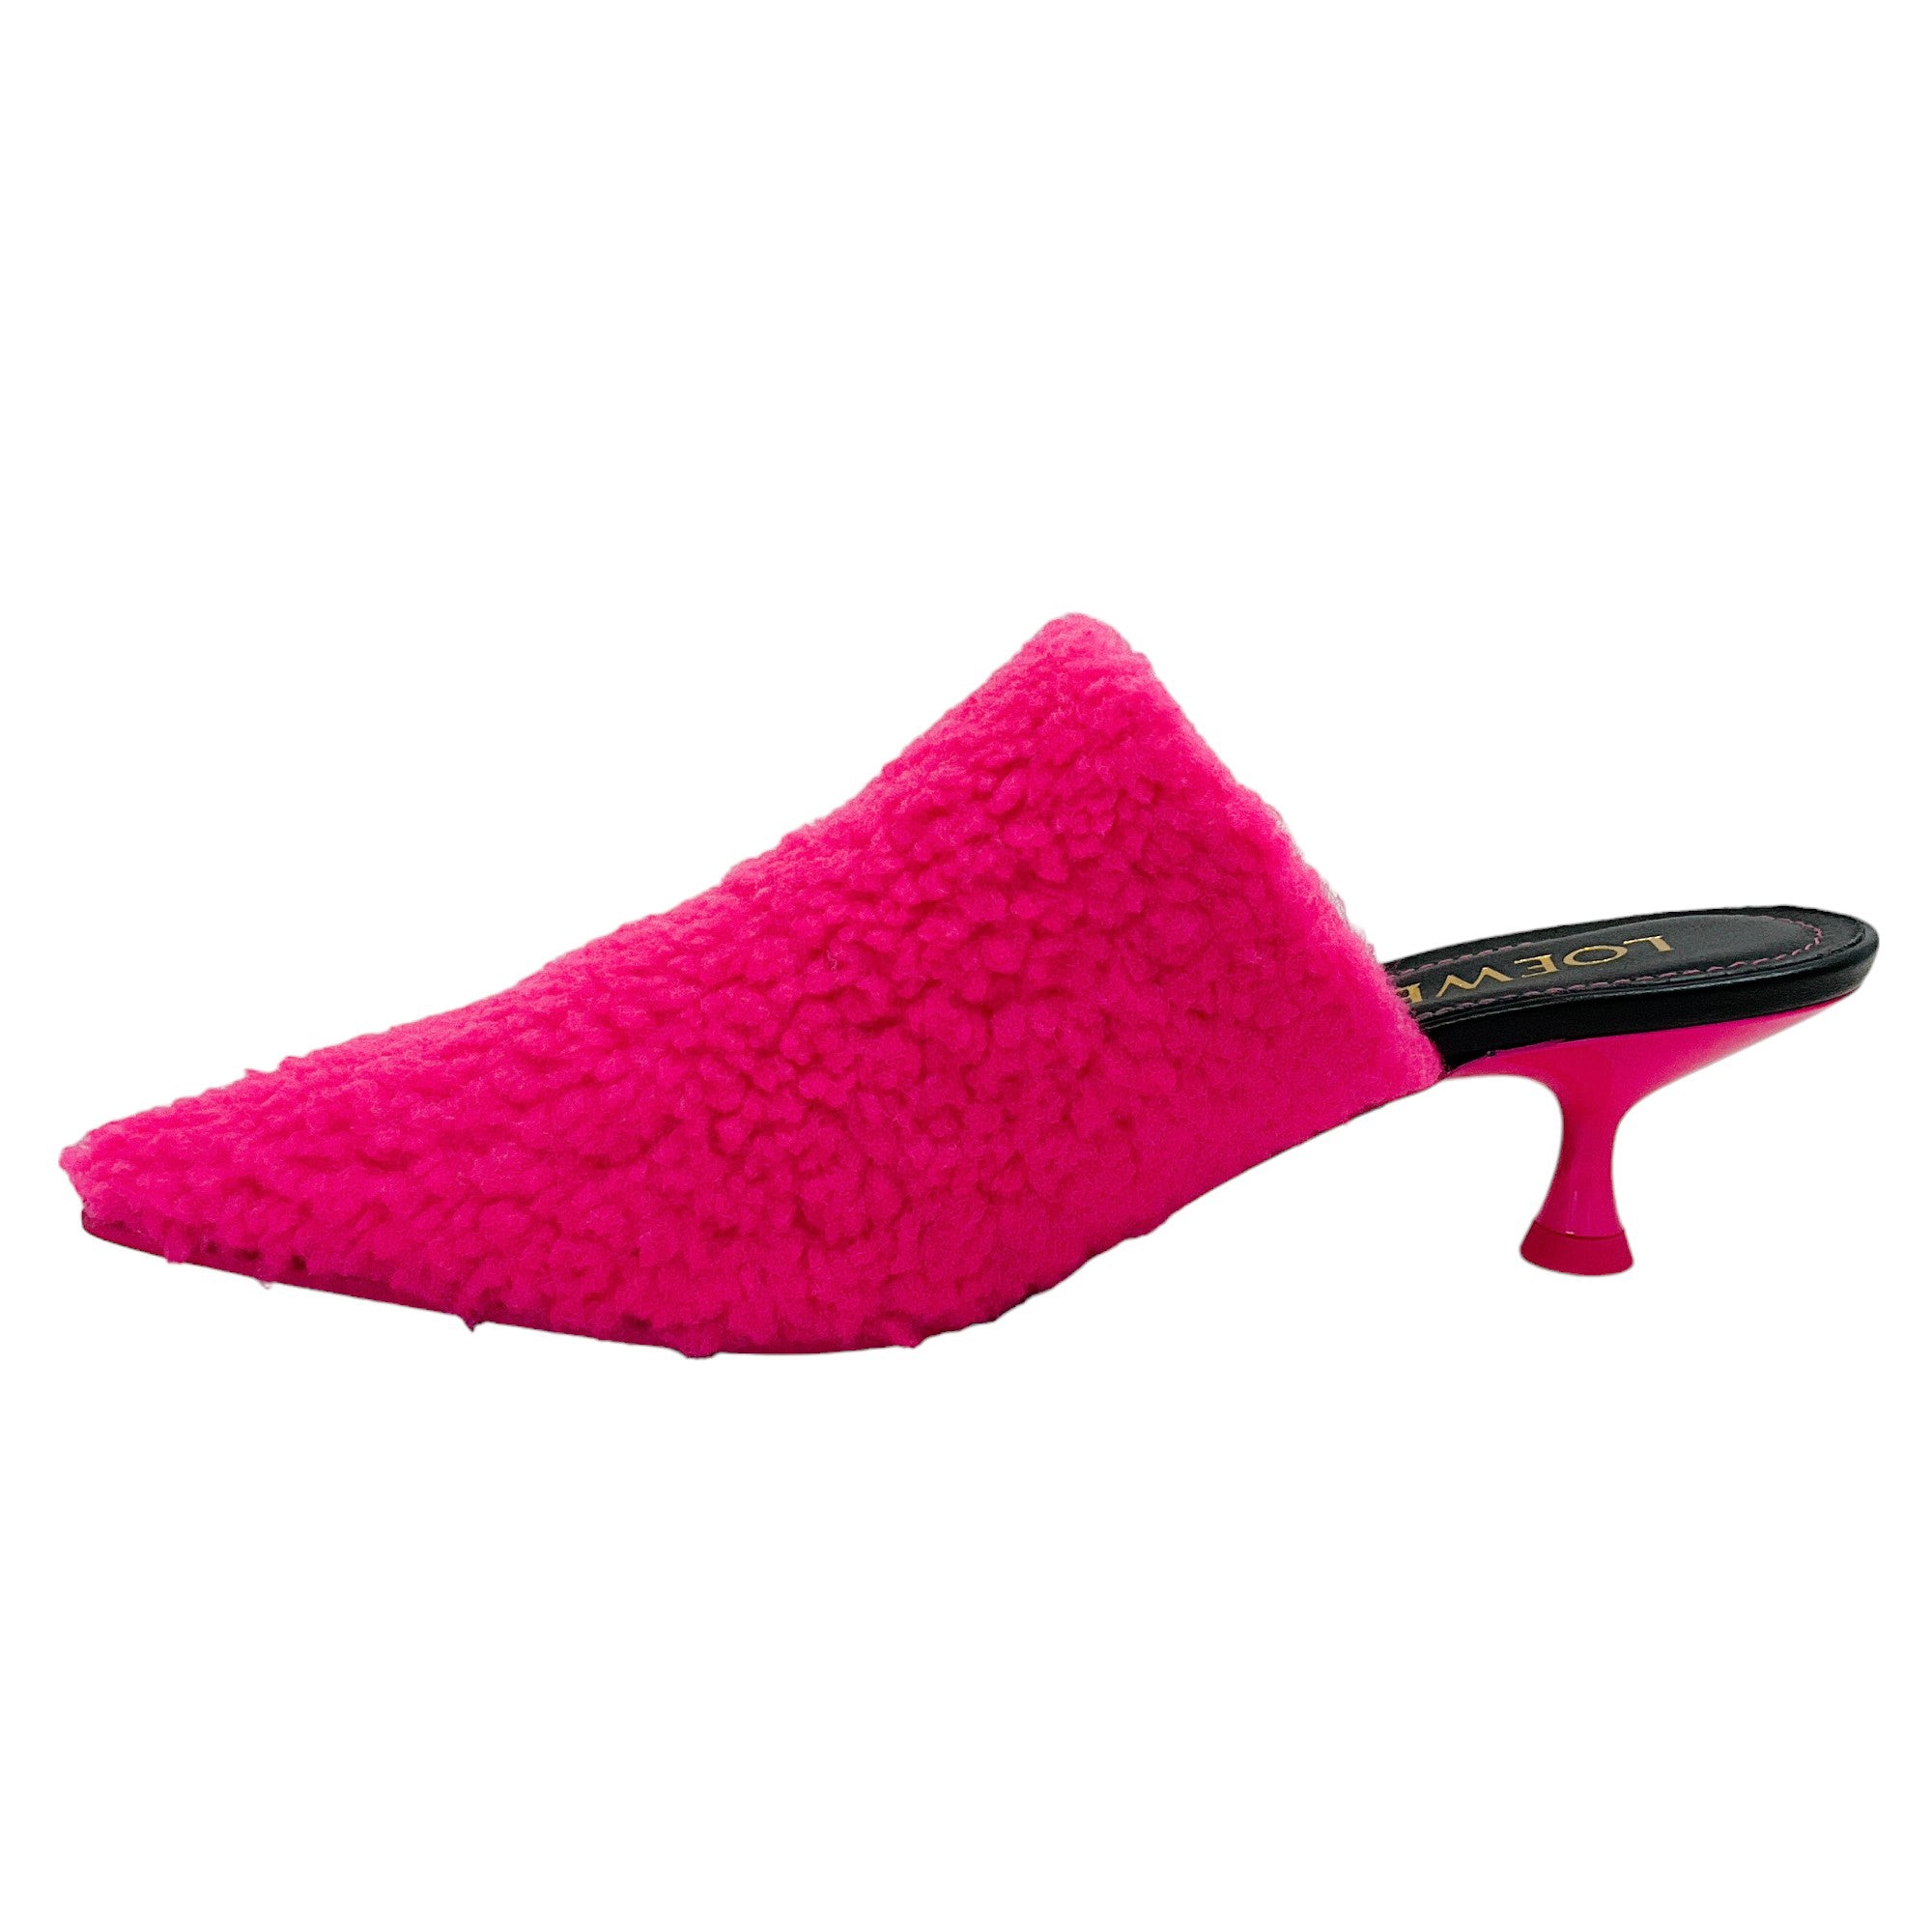 Loewe Neon Pink Fleece Pointy Mules